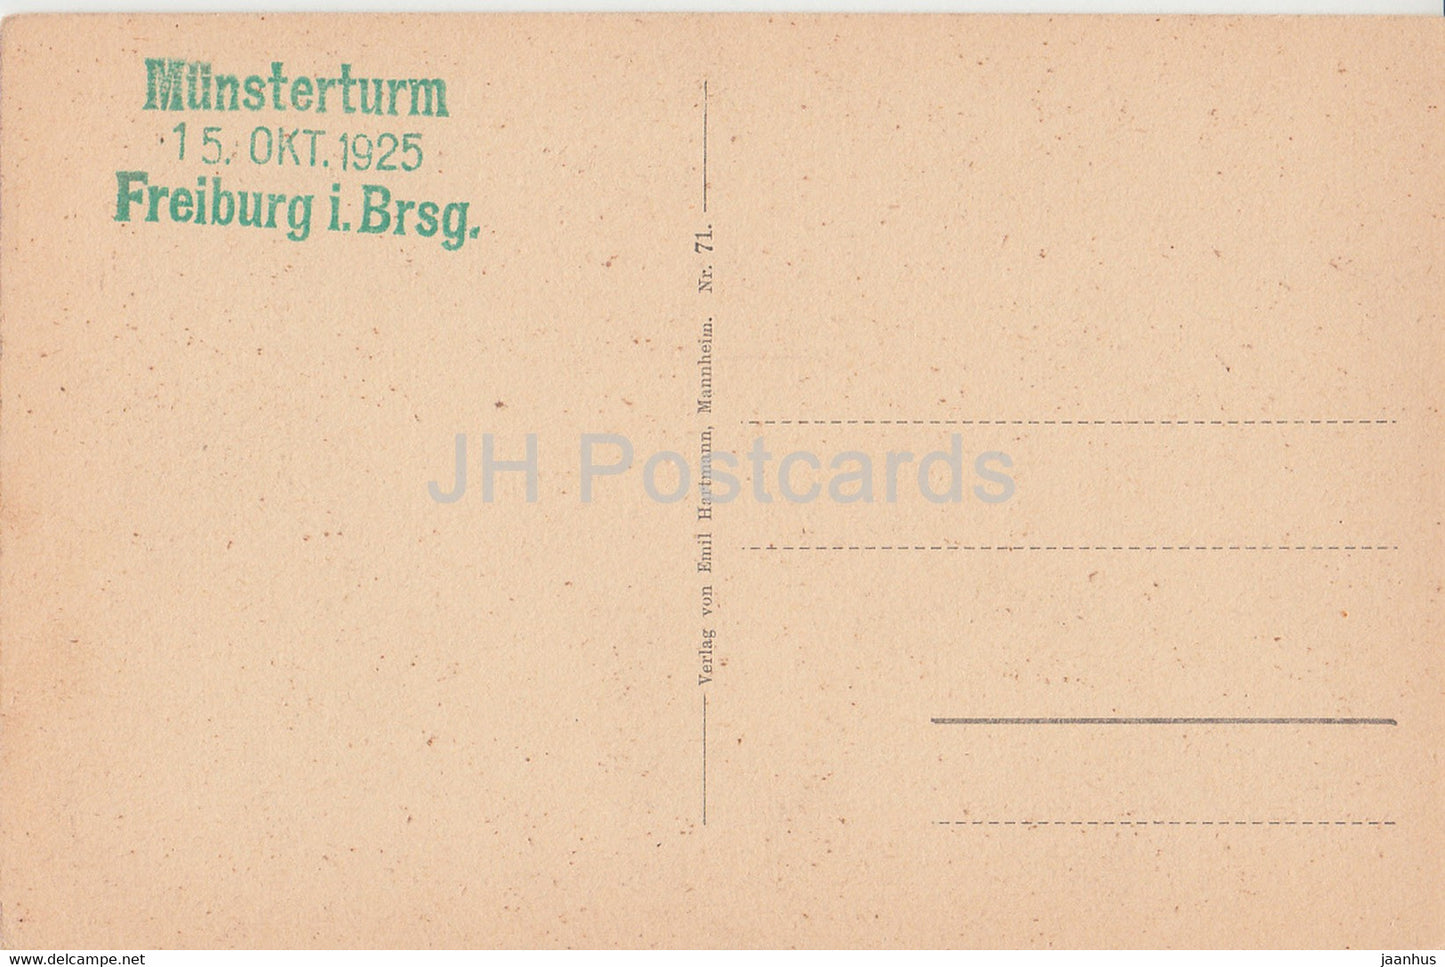 Freiburg i B - Das Münster - Dom - 1925 - alte Postkarte - Deutschland - unbenutzt